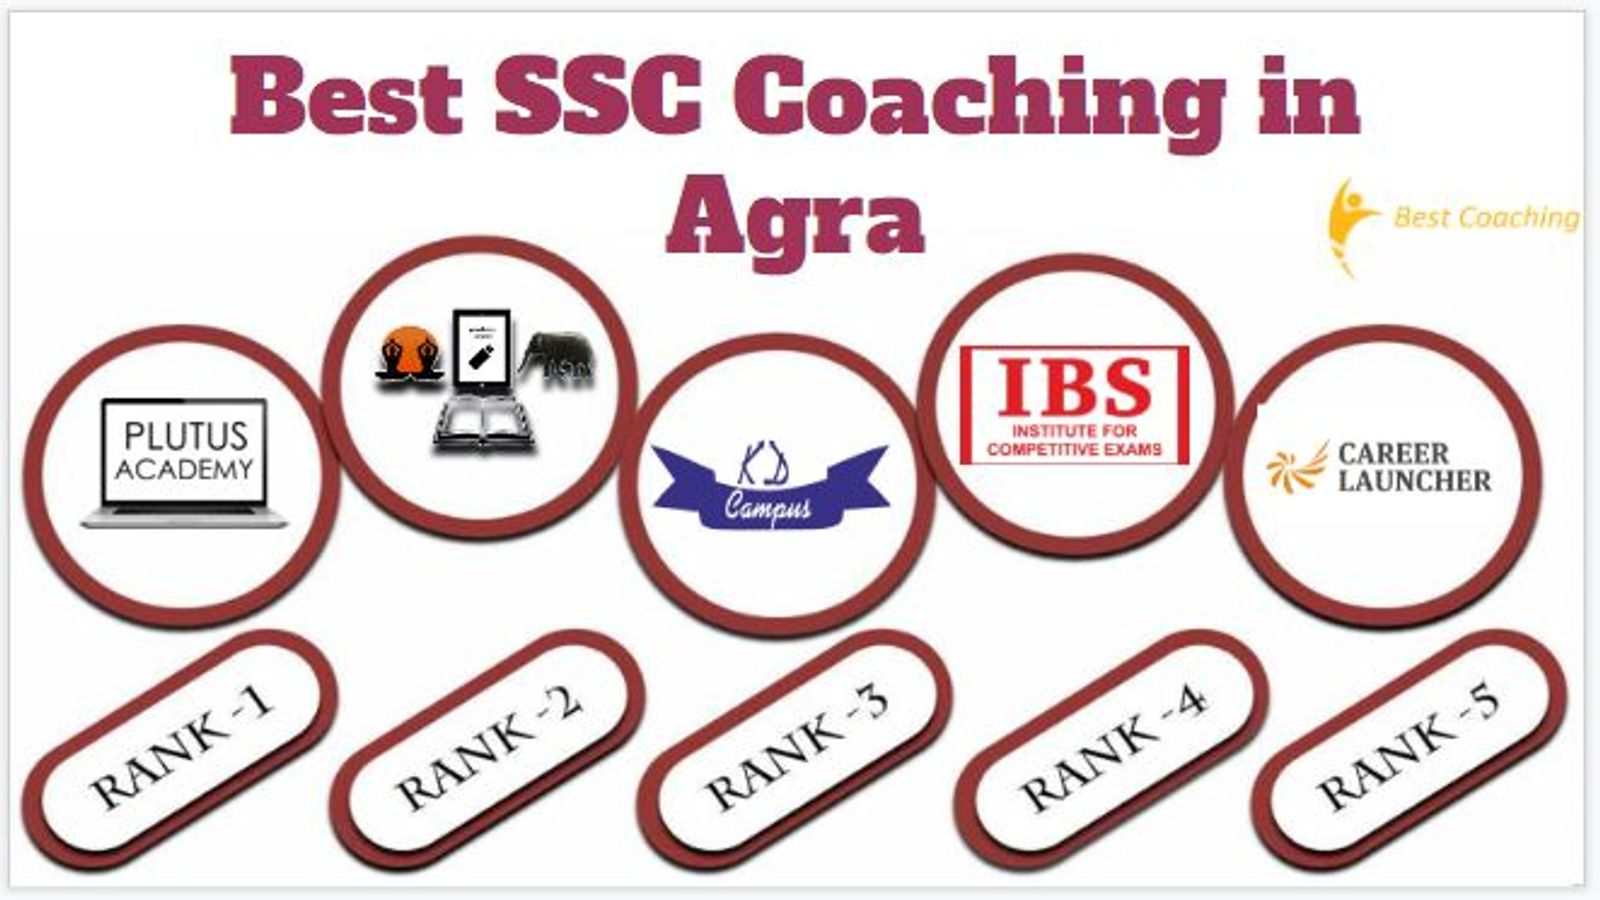 Best SSC Coaching in Agra